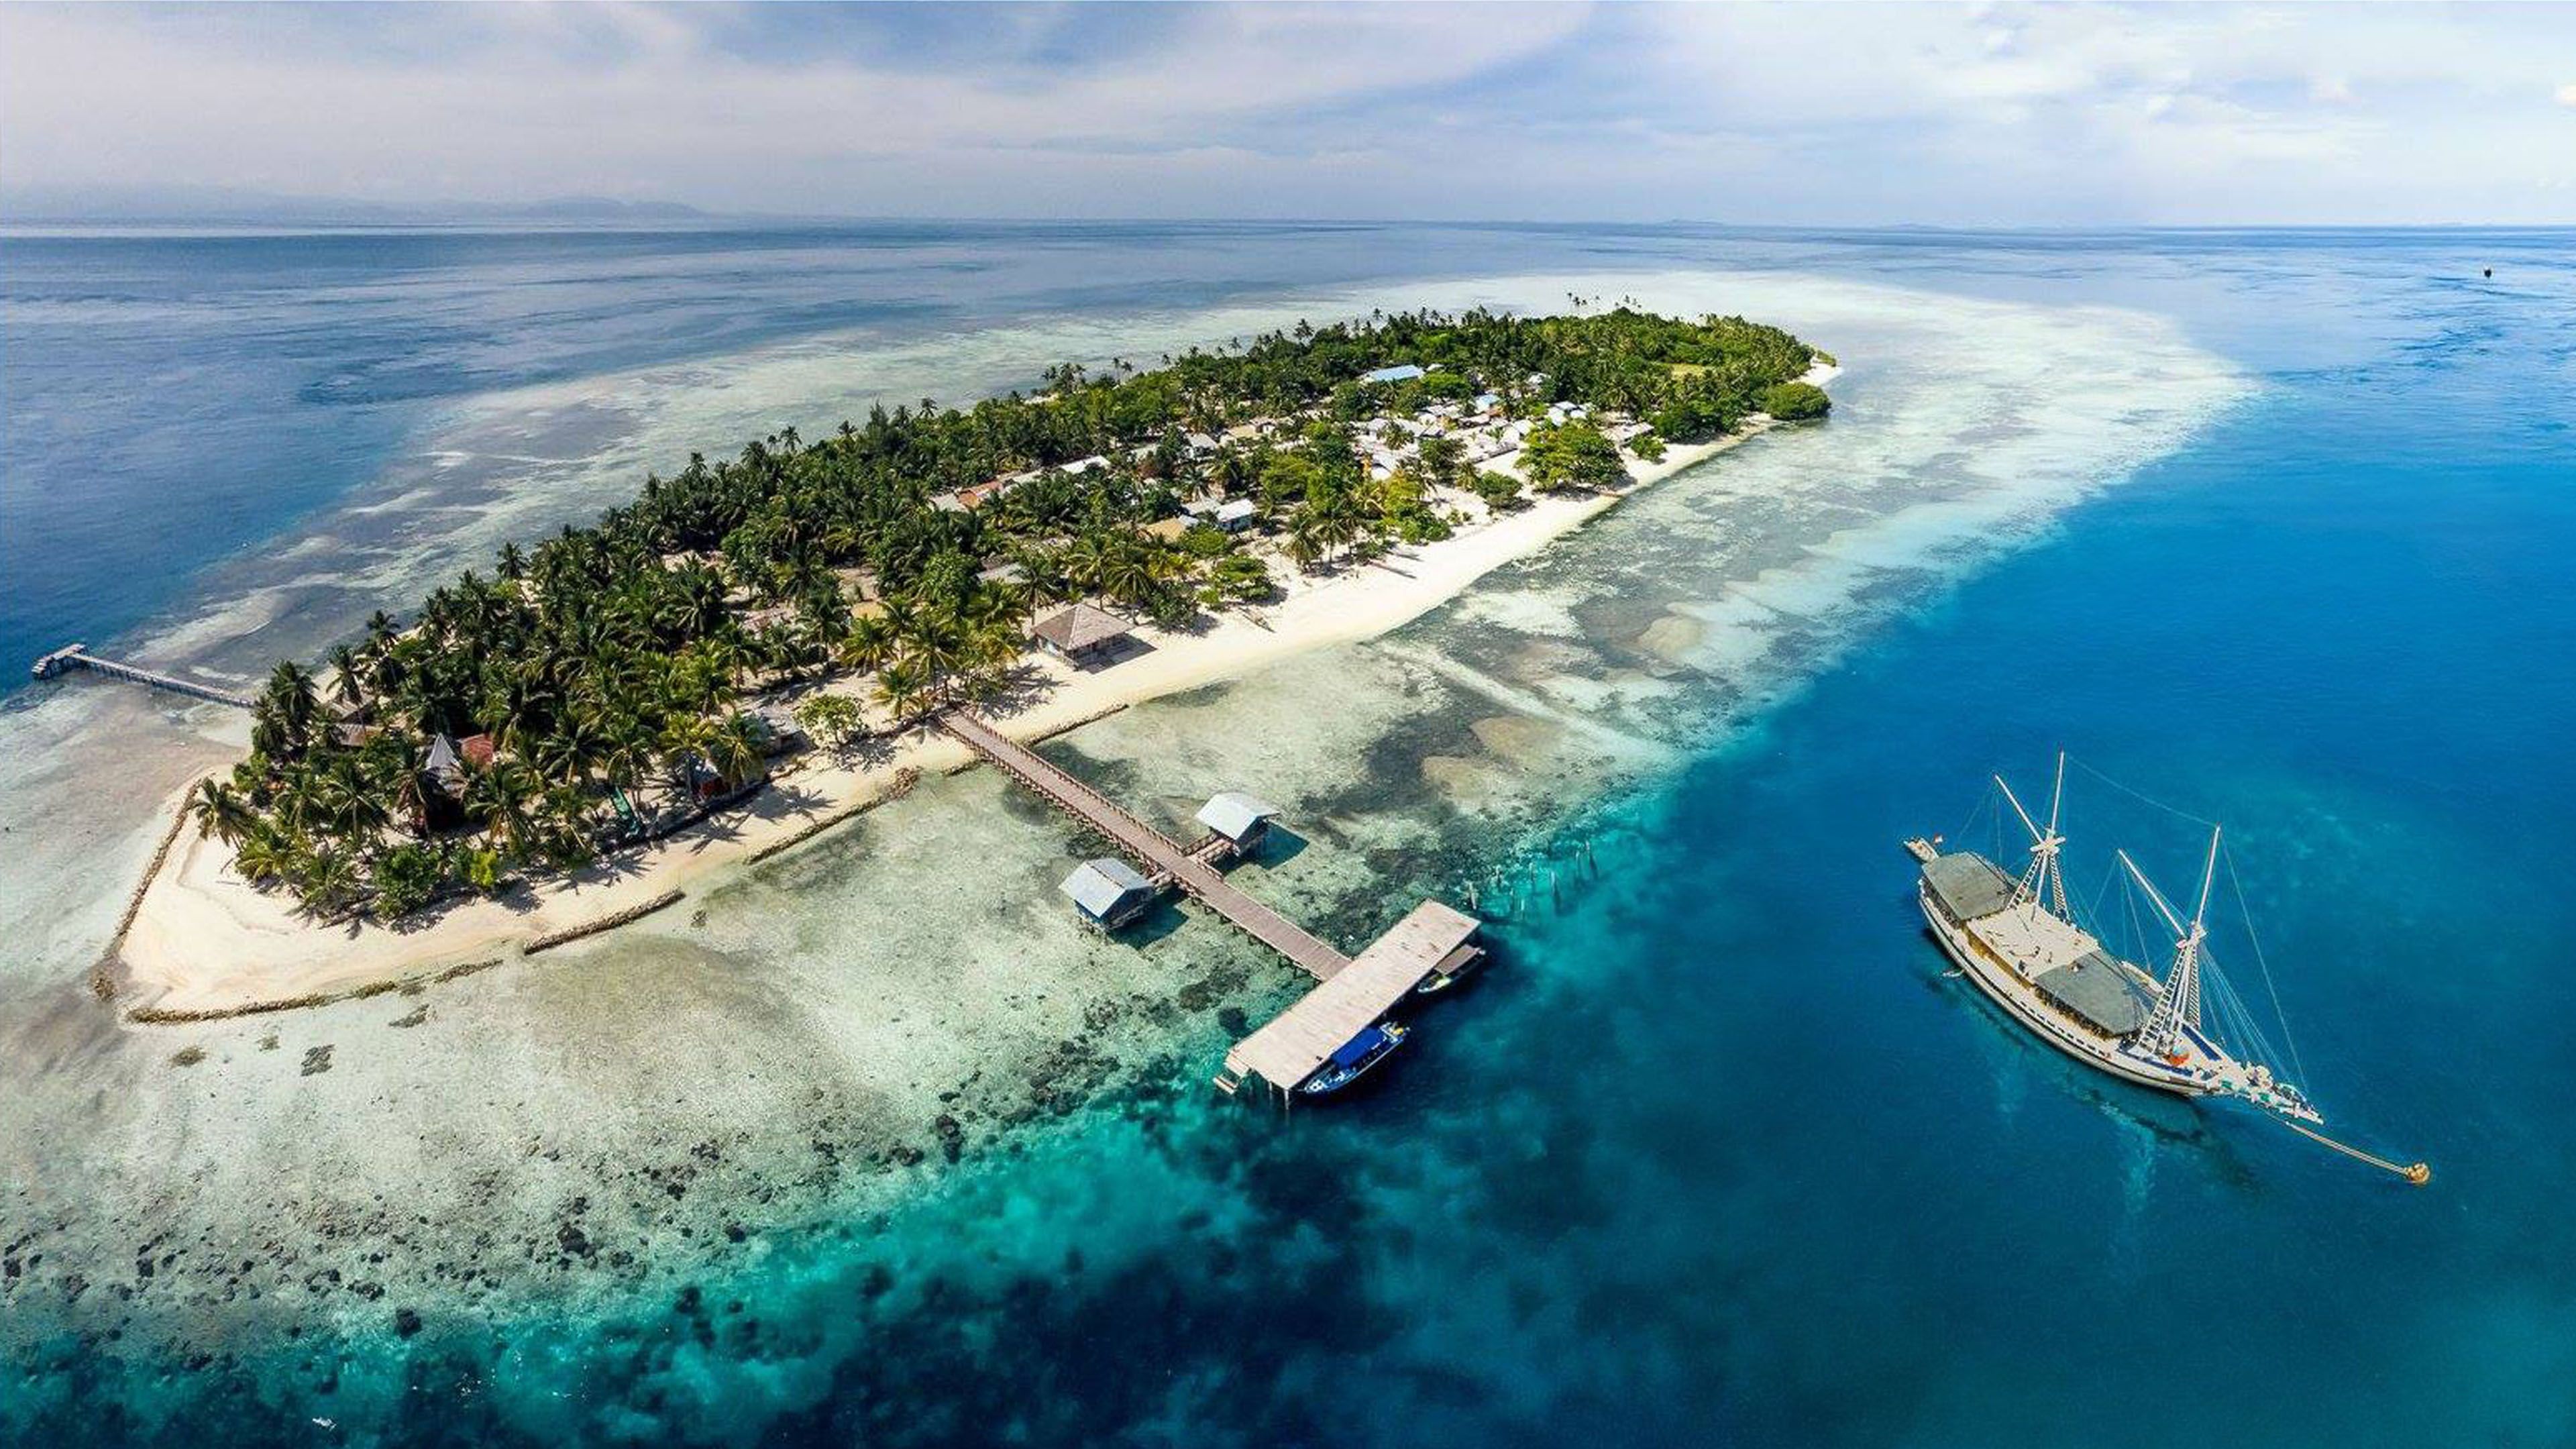 Arborek Island Picture of Raja Ampat Province West Papua Indonesia